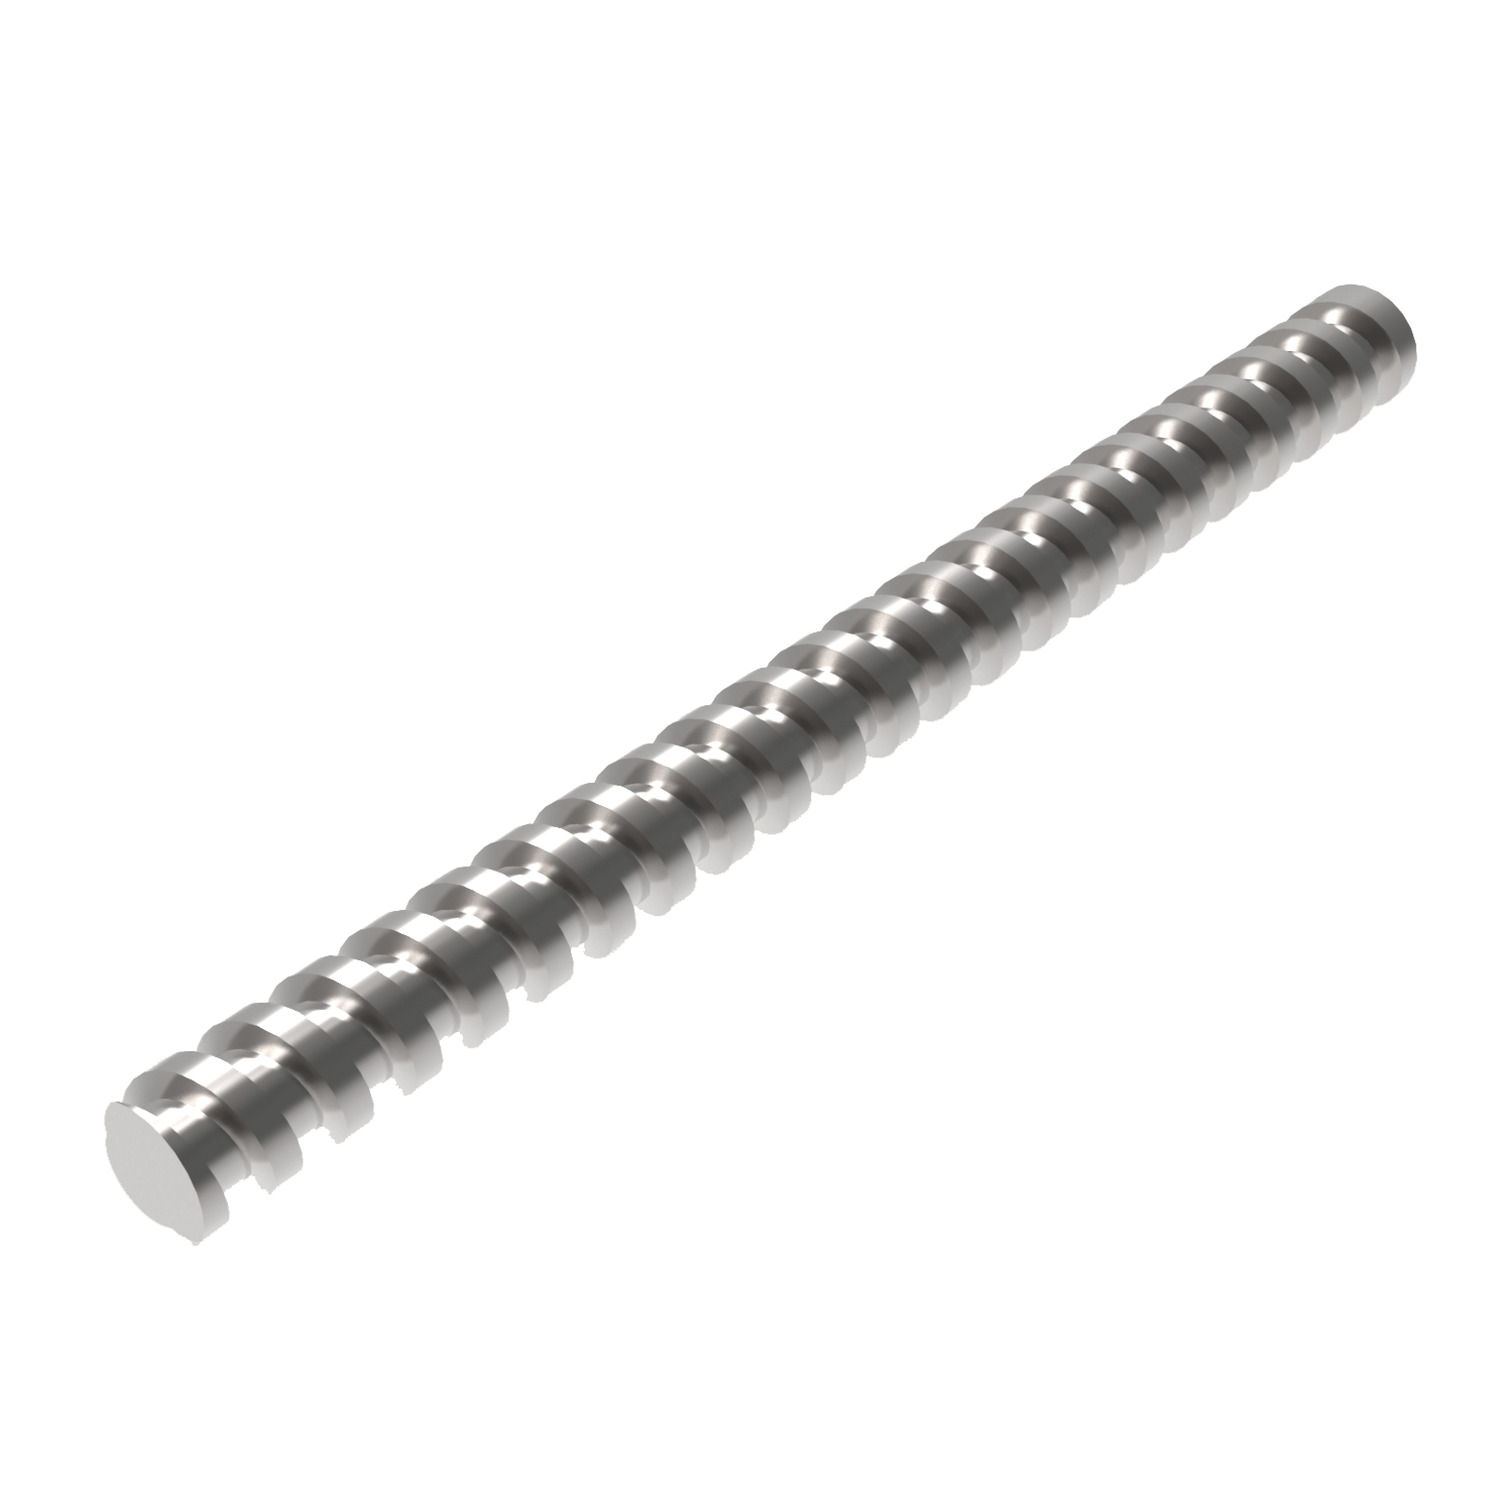 L1379.06 Ø 6 Miniature Rolled Ball Screw